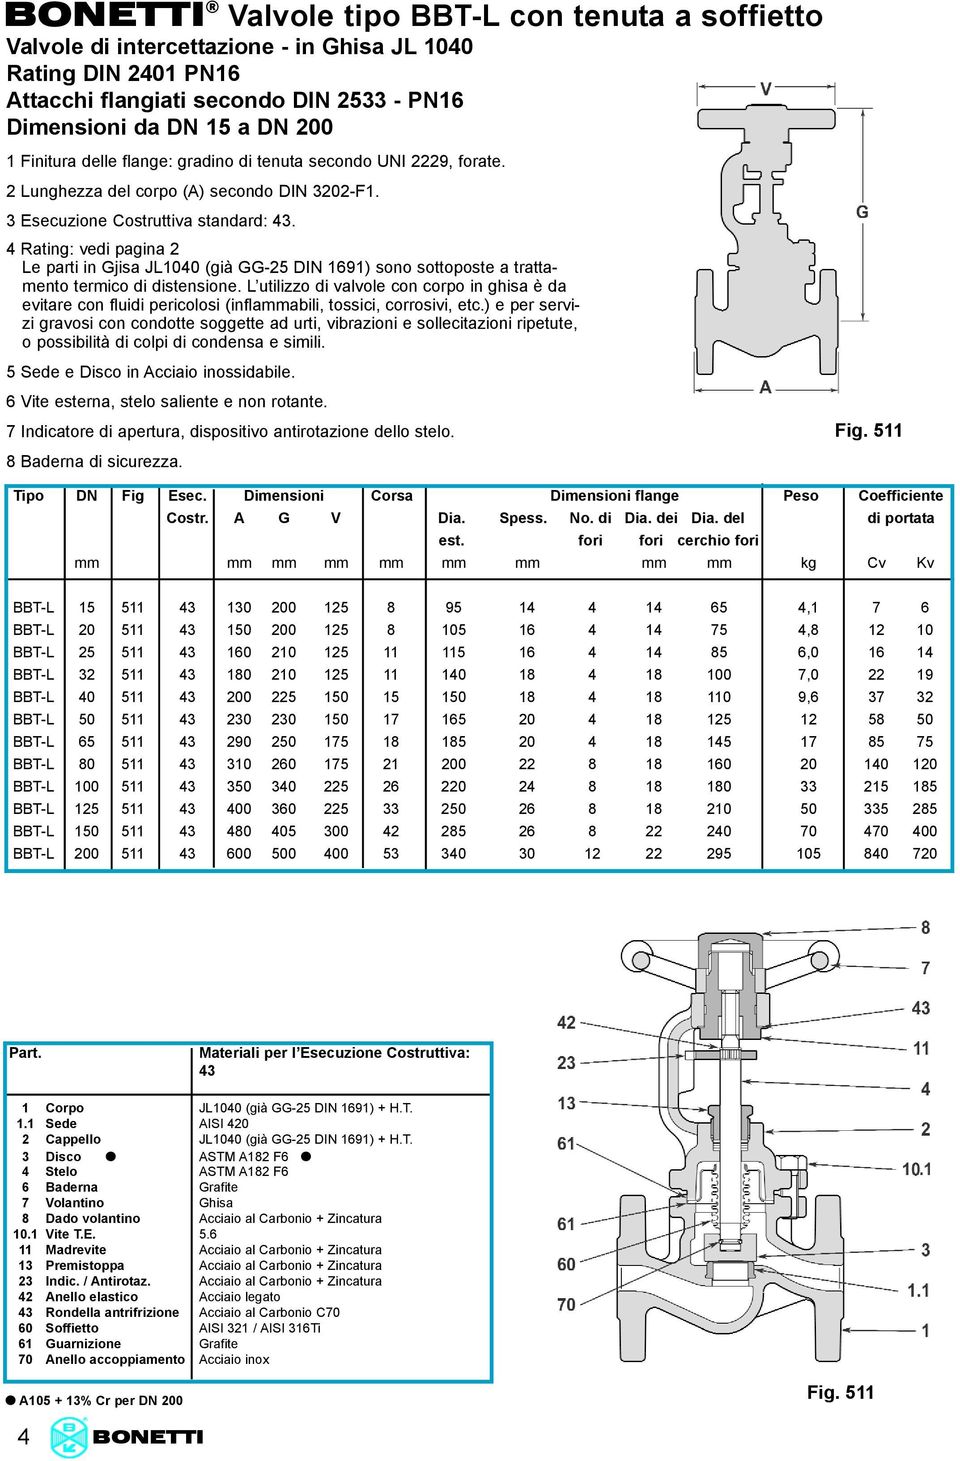 4 Rating: vedi pagina 2 Le parti in Gjisa JL1040 (già GG-25 DIN 1691) sono sottoposte a trattamento termico di distensione.